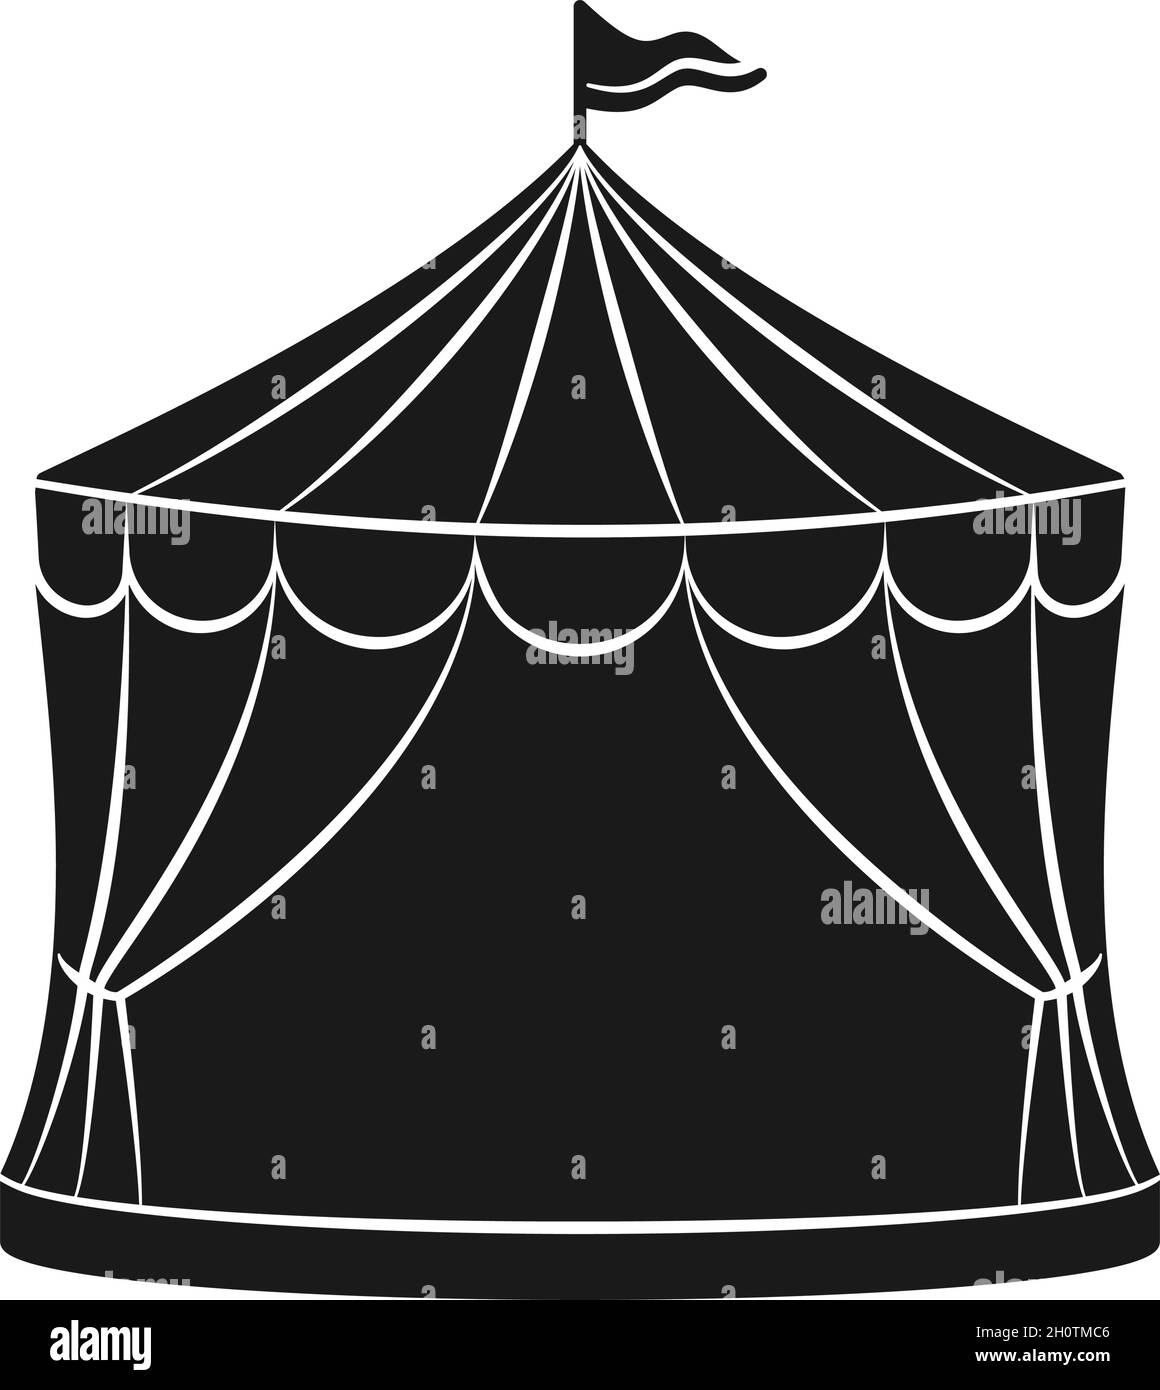 Tente de cirque avec drapeau pour le carnaval ou spectacle en icône de vecteur de silhouette Illustration de Vecteur